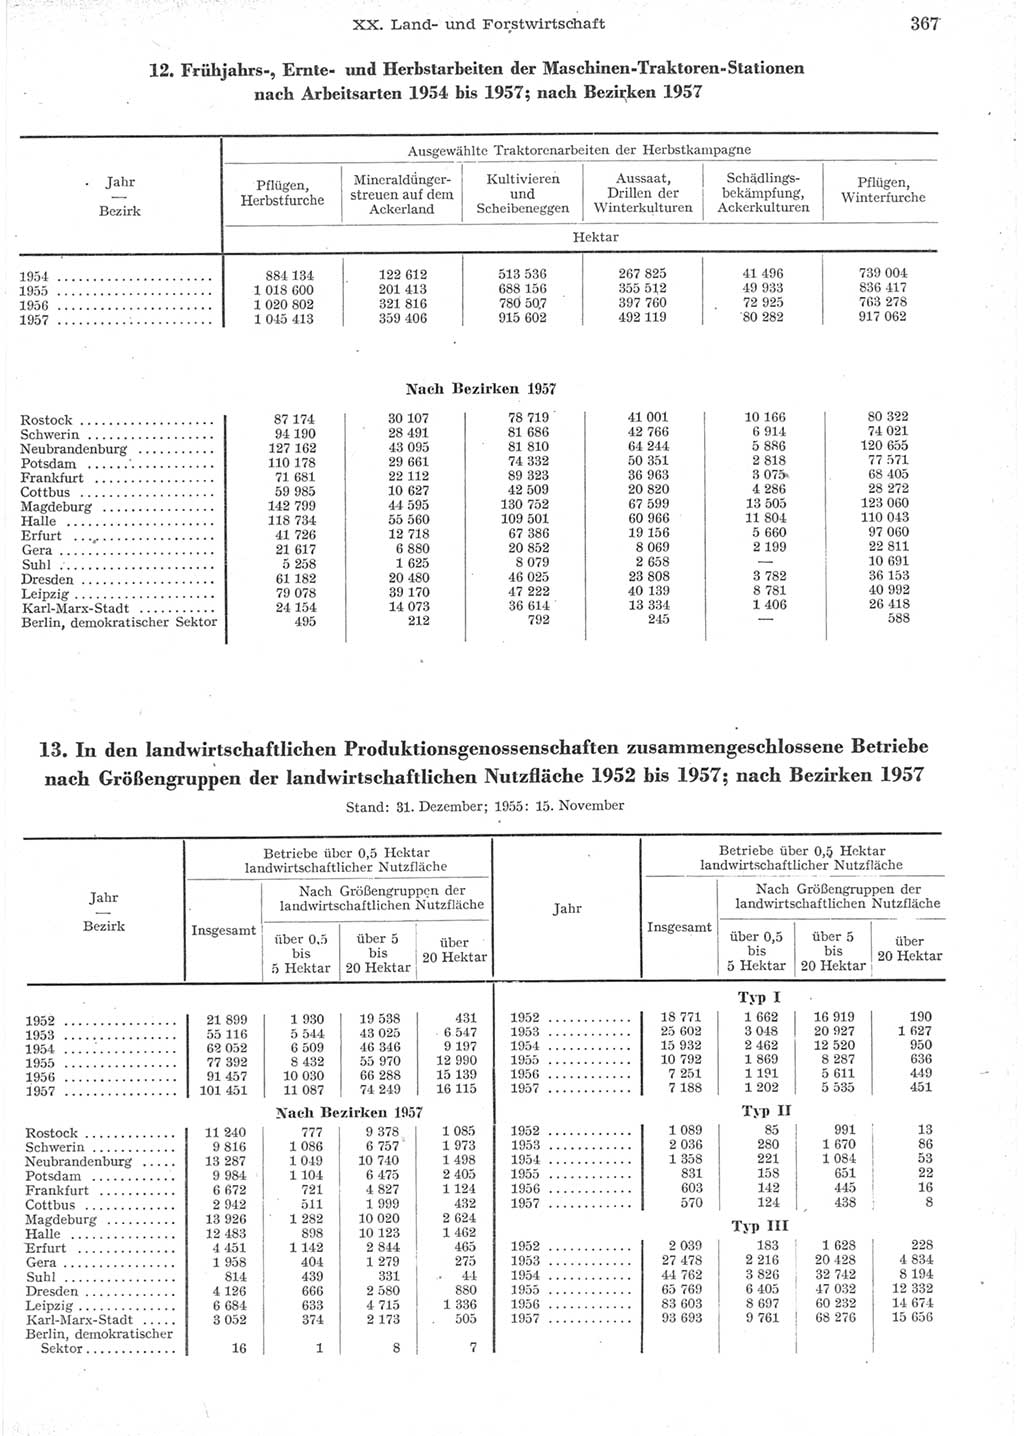 Statistisches Jahrbuch der Deutschen Demokratischen Republik (DDR) 1957, Seite 367 (Stat. Jb. DDR 1957, S. 367)